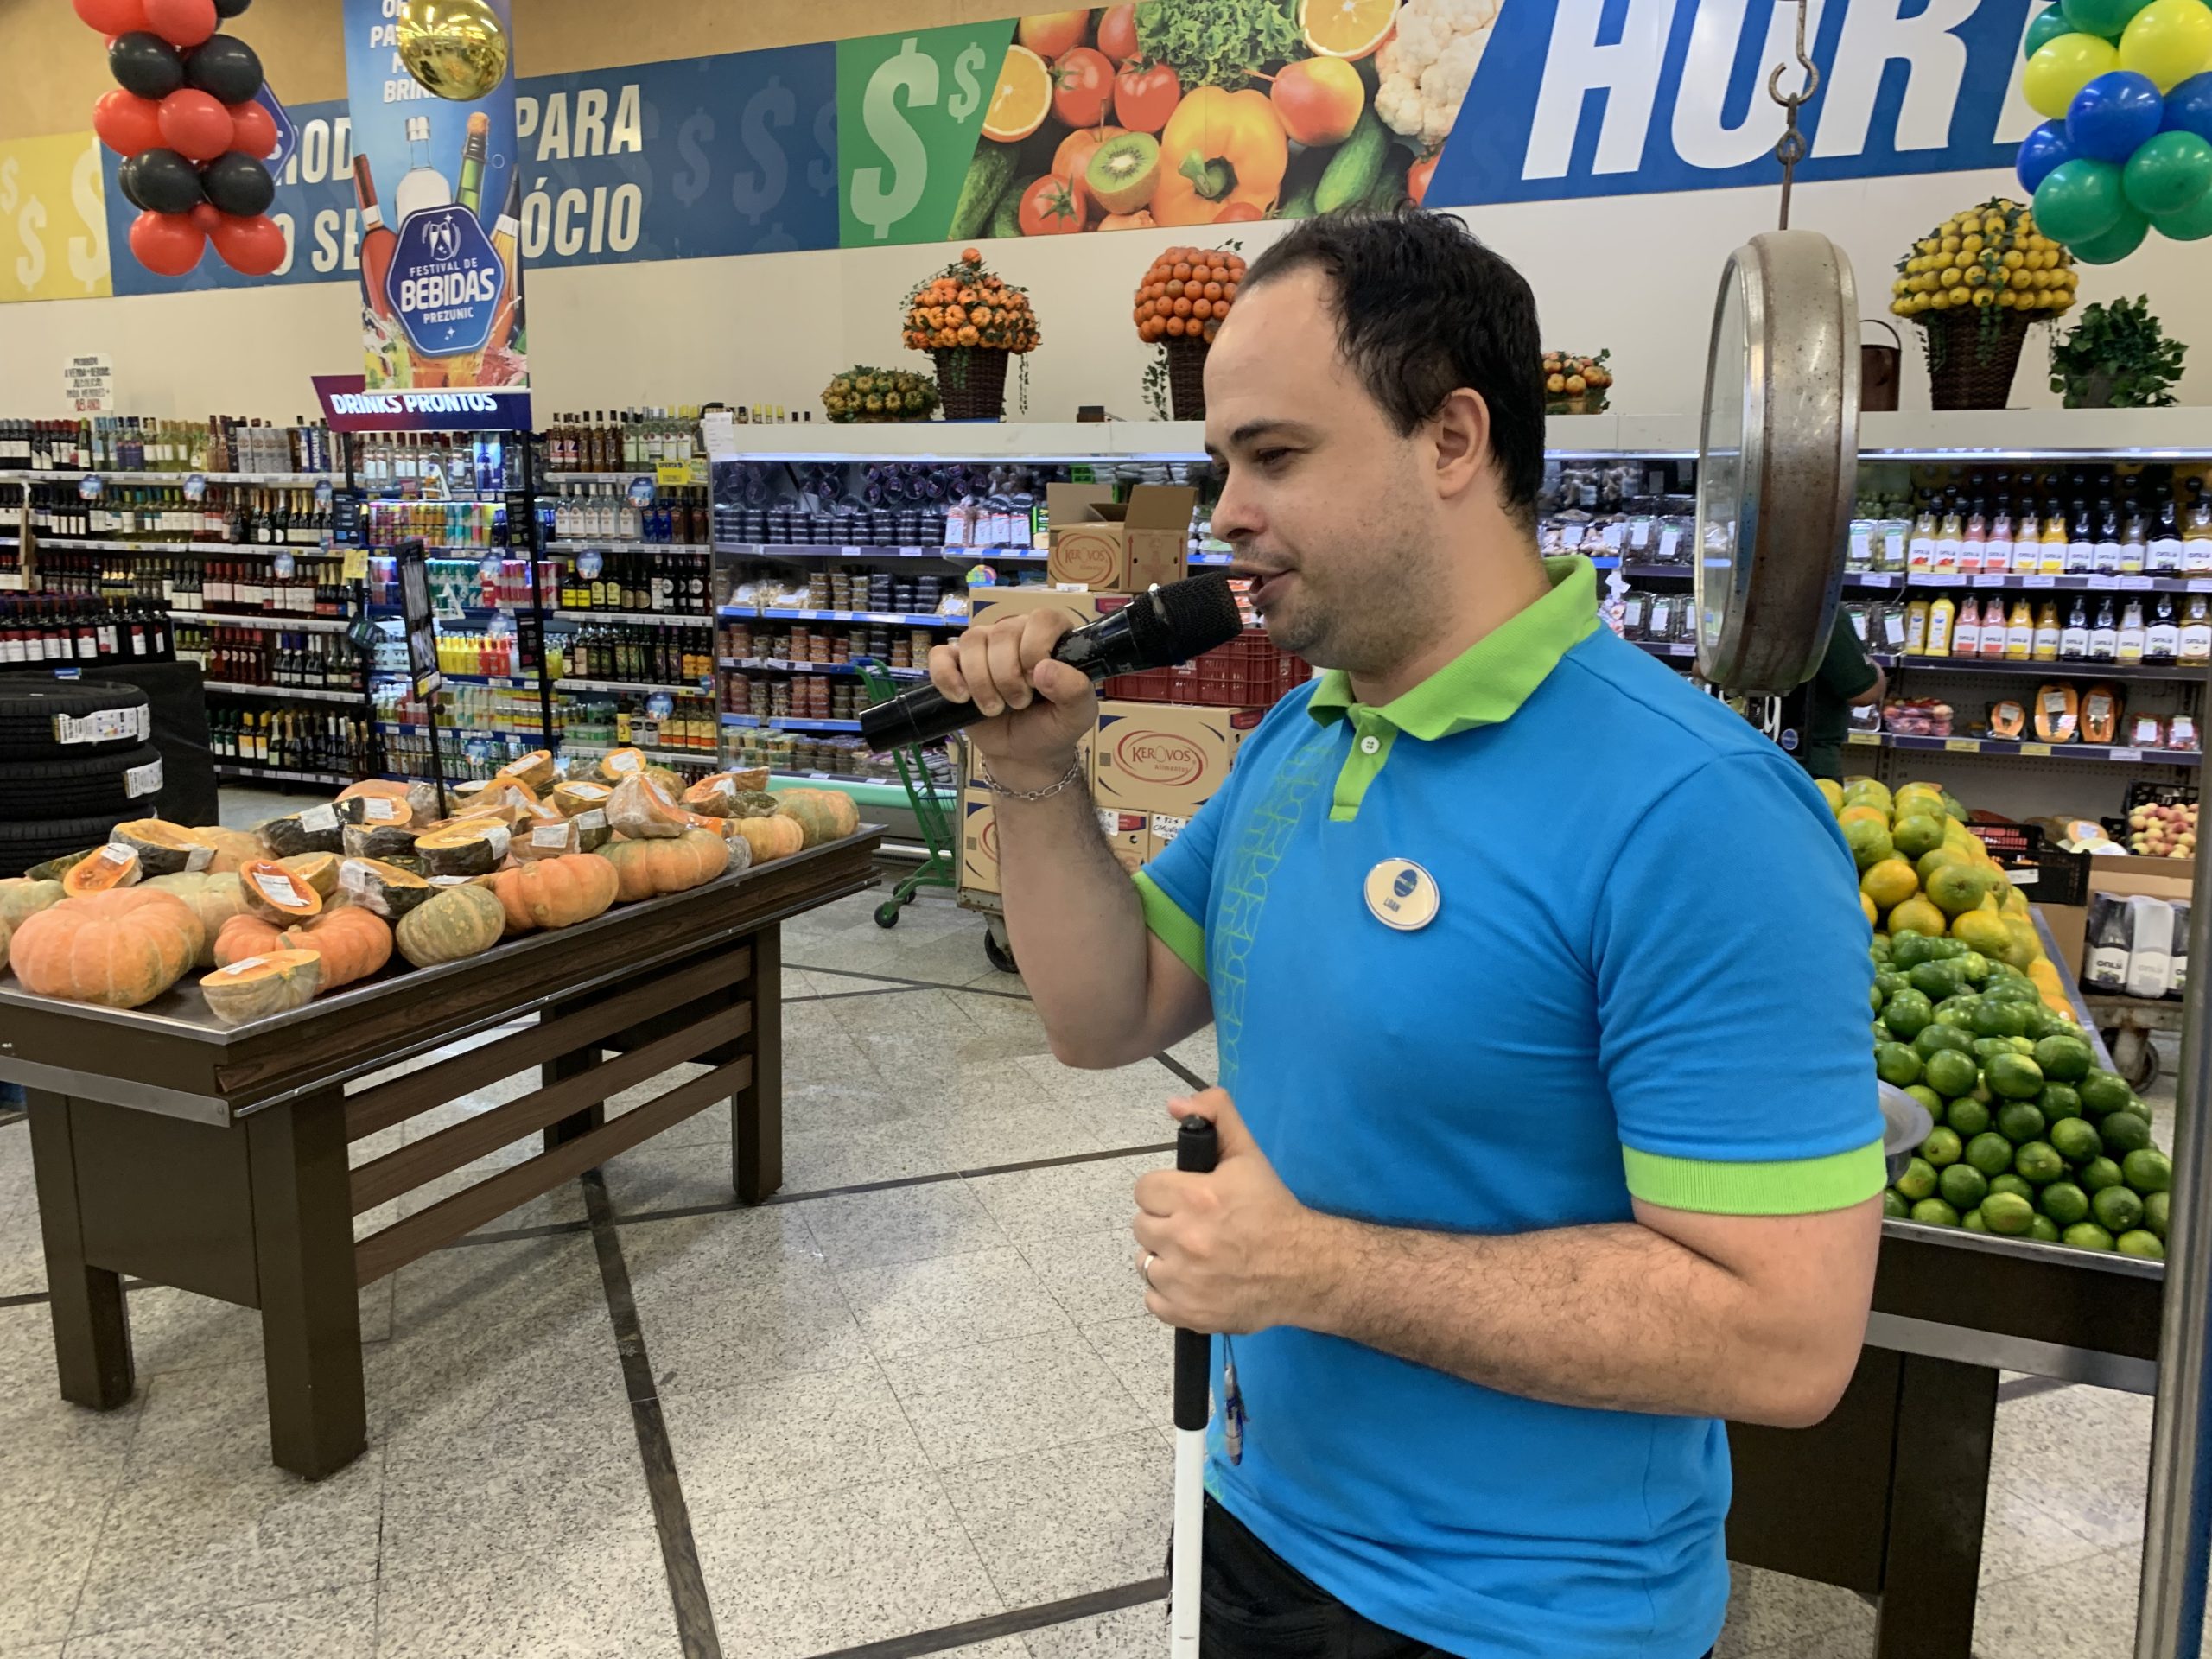 Featured image for “Locutor com deficiência visual é destaque em supermercado do Rio”